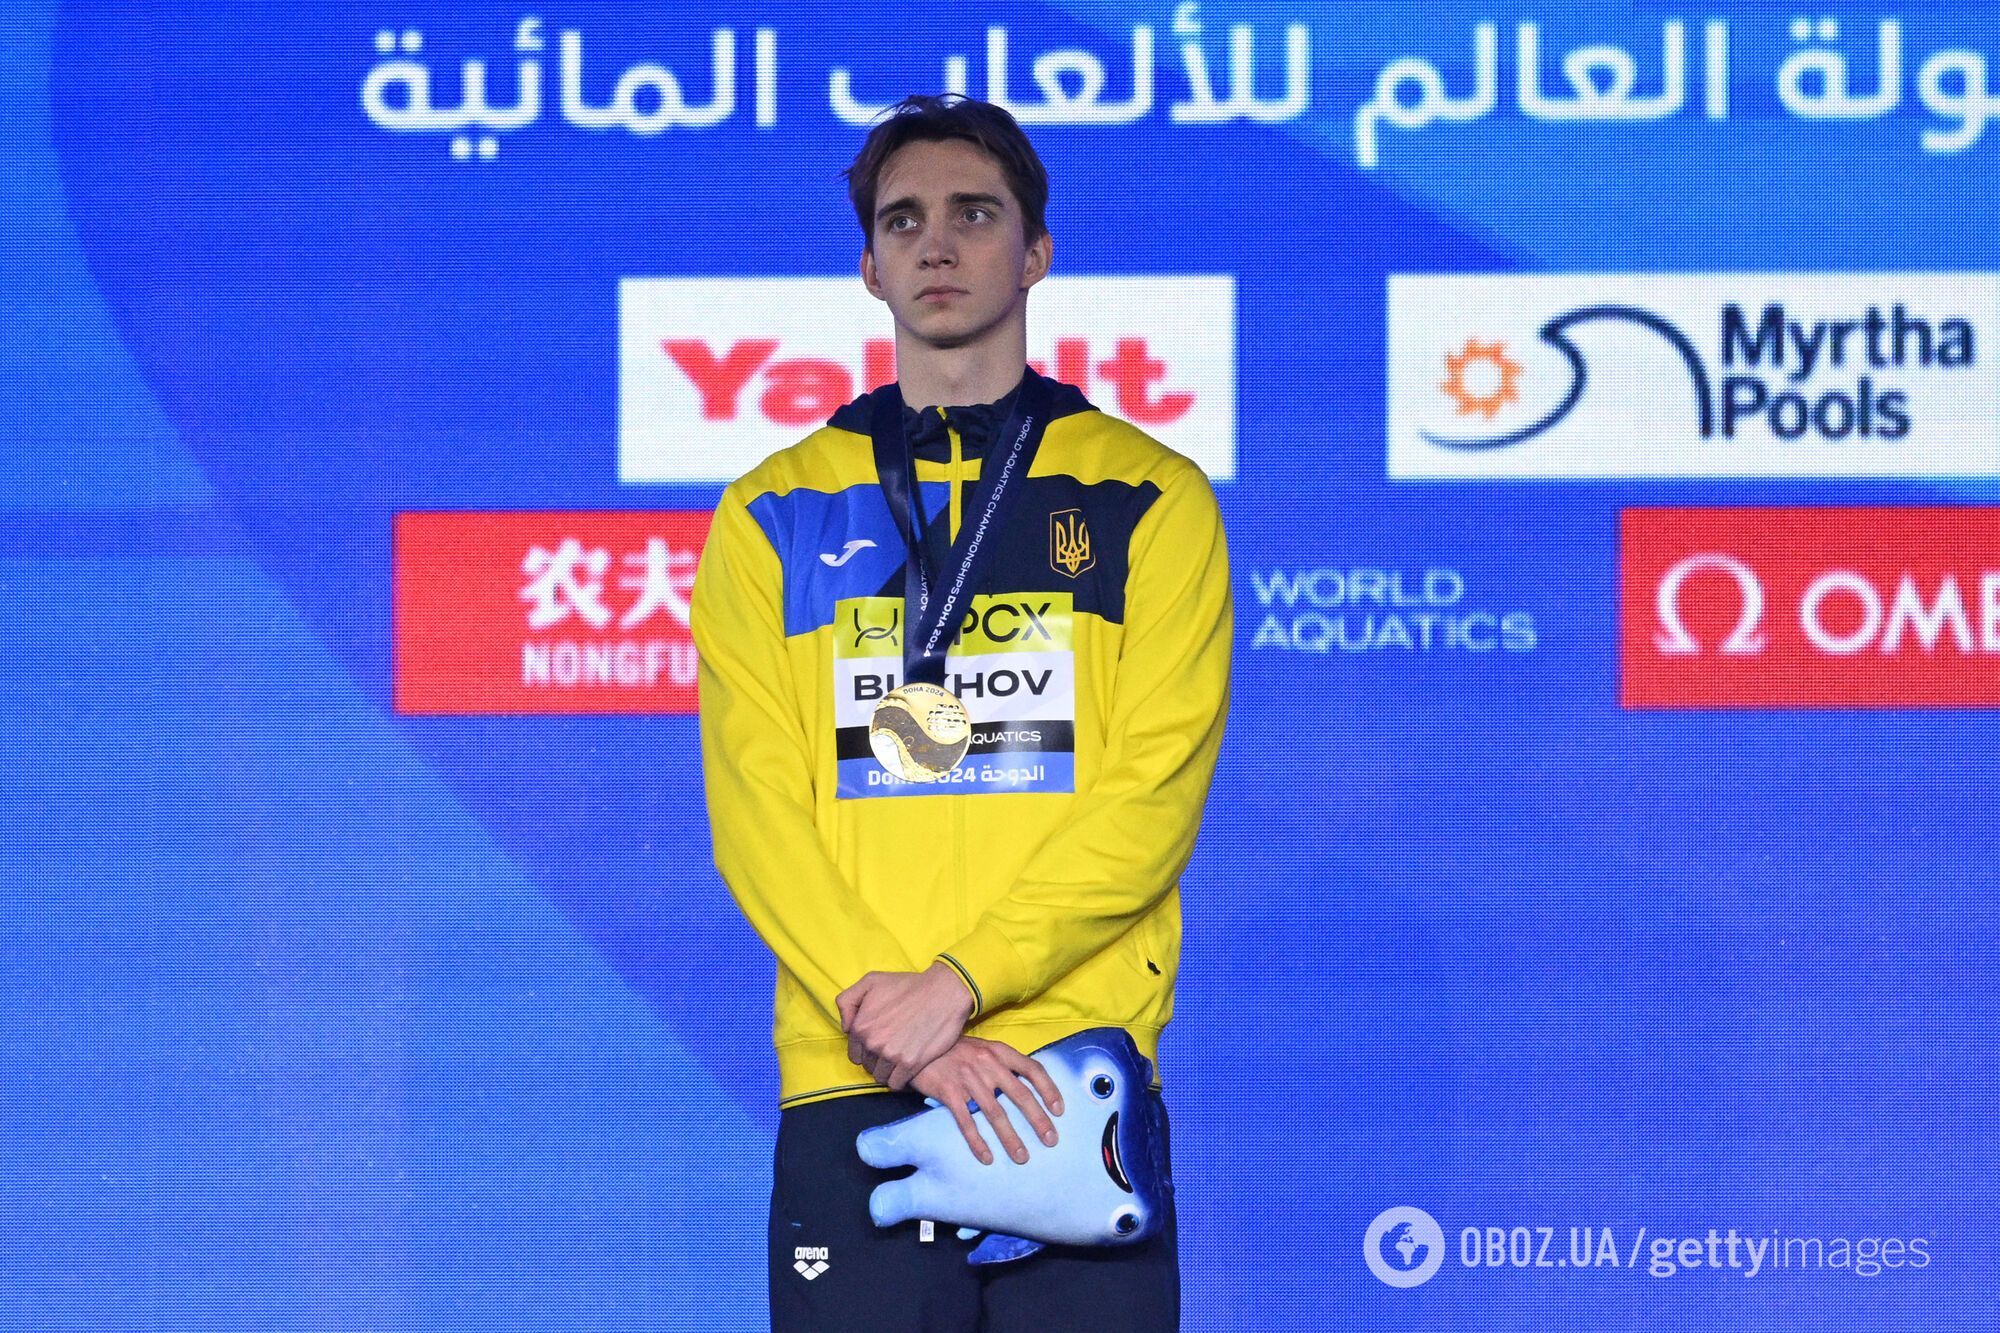 Вперше в історії! Український плавець сенсаційно виграв чемпіонат світу, випередивши суперника на 0.01 секунди